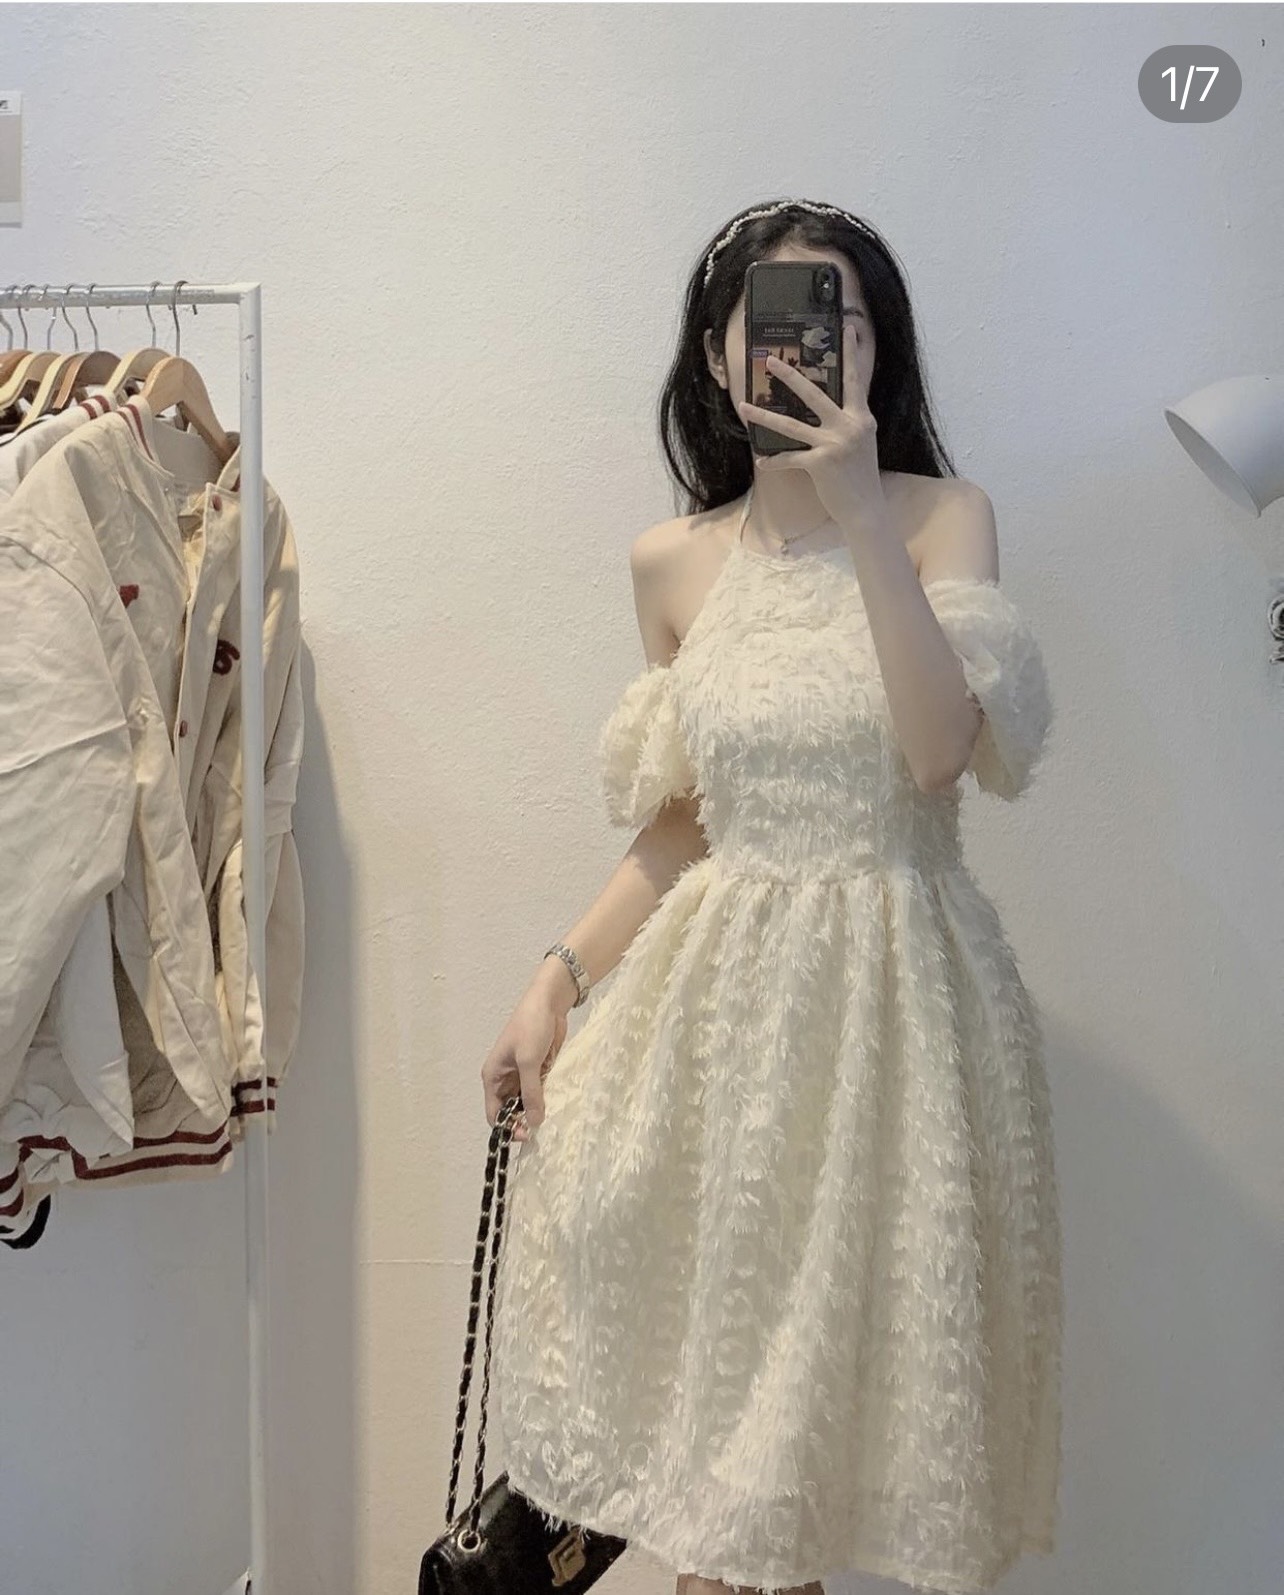 Váy babydoll trễ vai 🎉 👉 Chin mặc váy cổ yếm kiểu babydoll trễ vai, chất  liệu vải voan hoa nổi, bên trong có lớp váy lót, lưng váy phối… | Instagram